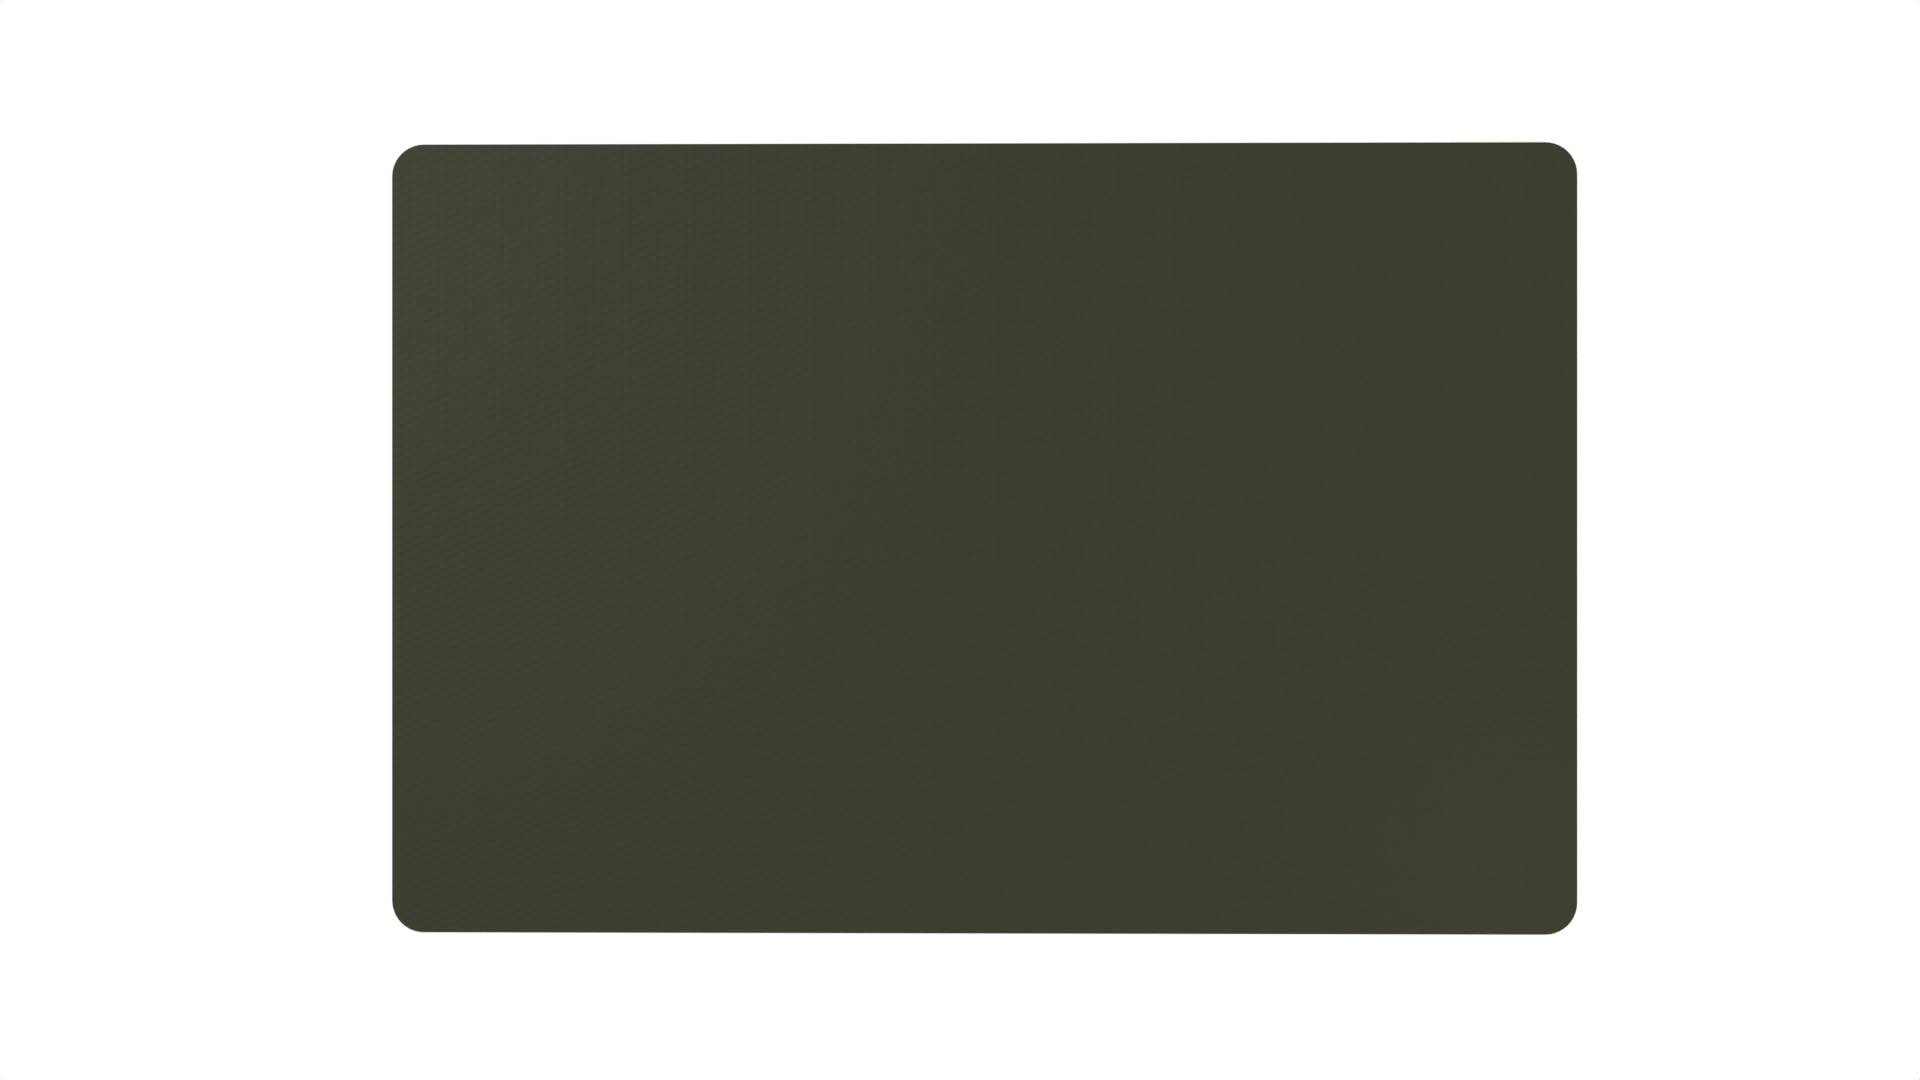 Flickly Anhänger Planen Reparatur Pflaster | in vielen Farben erhältlich | 30cm x 20cm | SELBSTKLEBEND RAL 6031 Bundeswehr | Bronzegrün von Flickly